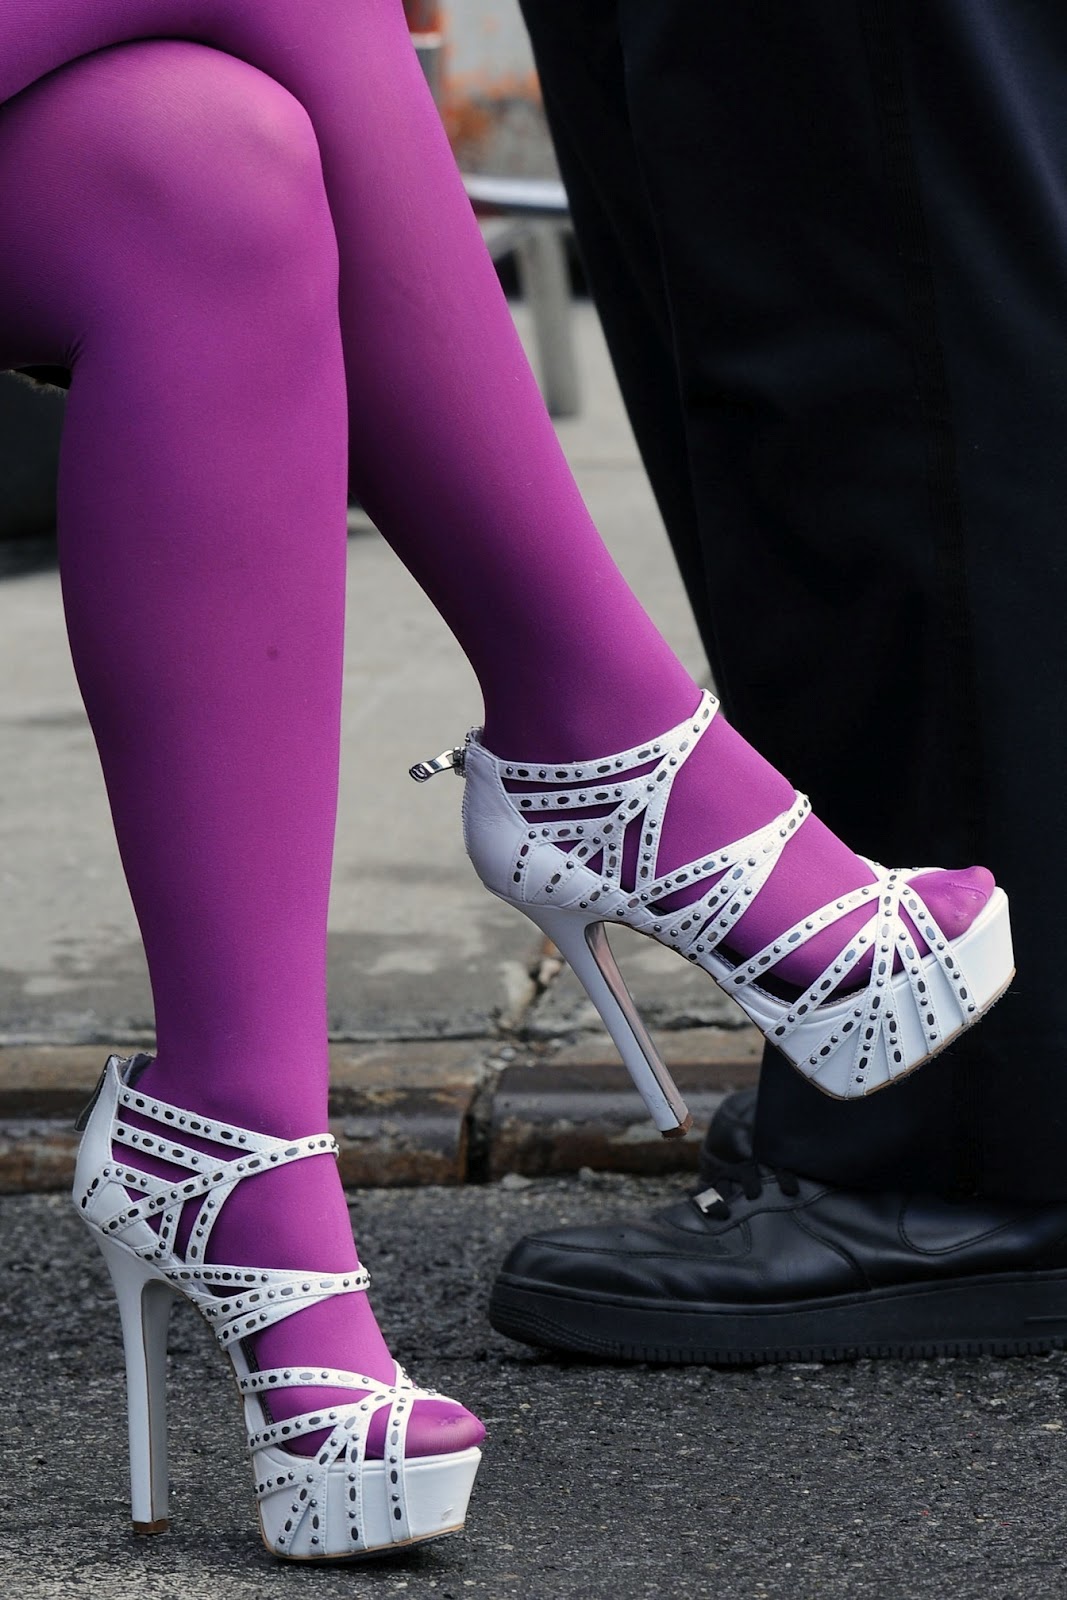 http://4.bp.blogspot.com/-xYxpRKXyr9g/T762mM6RkTI/AAAAAAAAFEw/5gN236xApqA/s1600/Mischa_Barton+tights+and+open+toe+high+heels+sandals.jpg